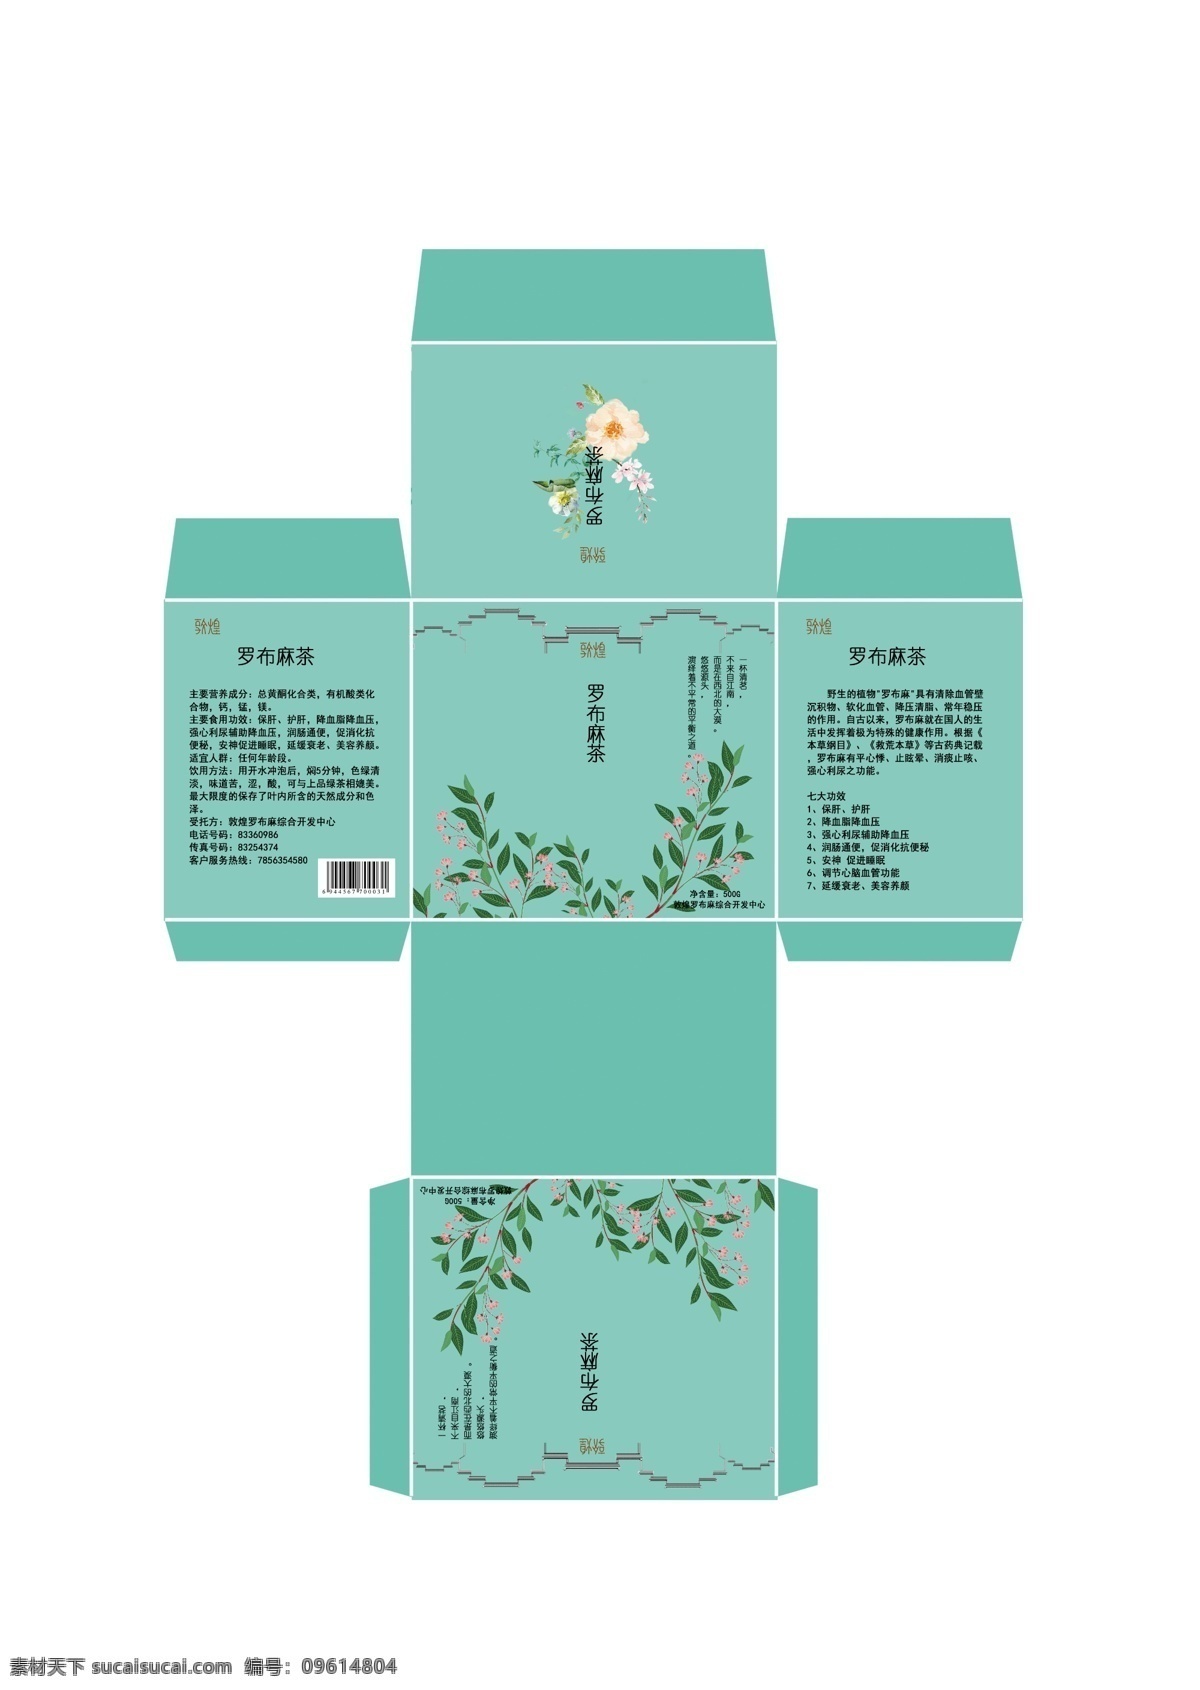 敦煌 罗布麻 茶叶 系列 包装设计 茶